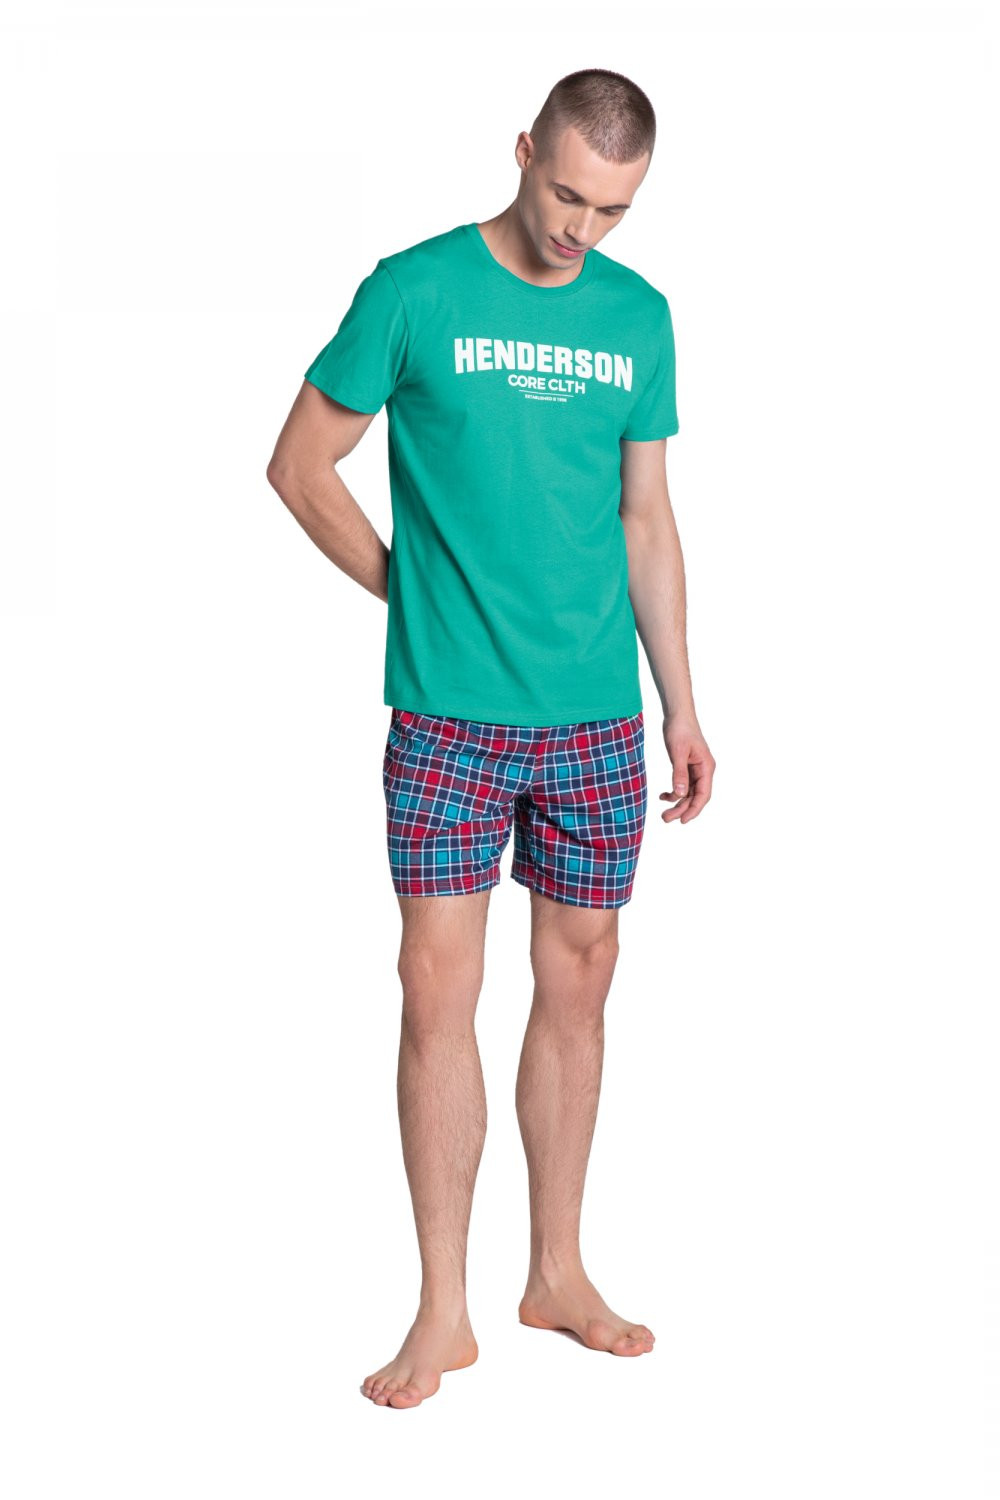 Pánské pyžamo 38874 Lid turquise - HENDERSON tyrkysová XL